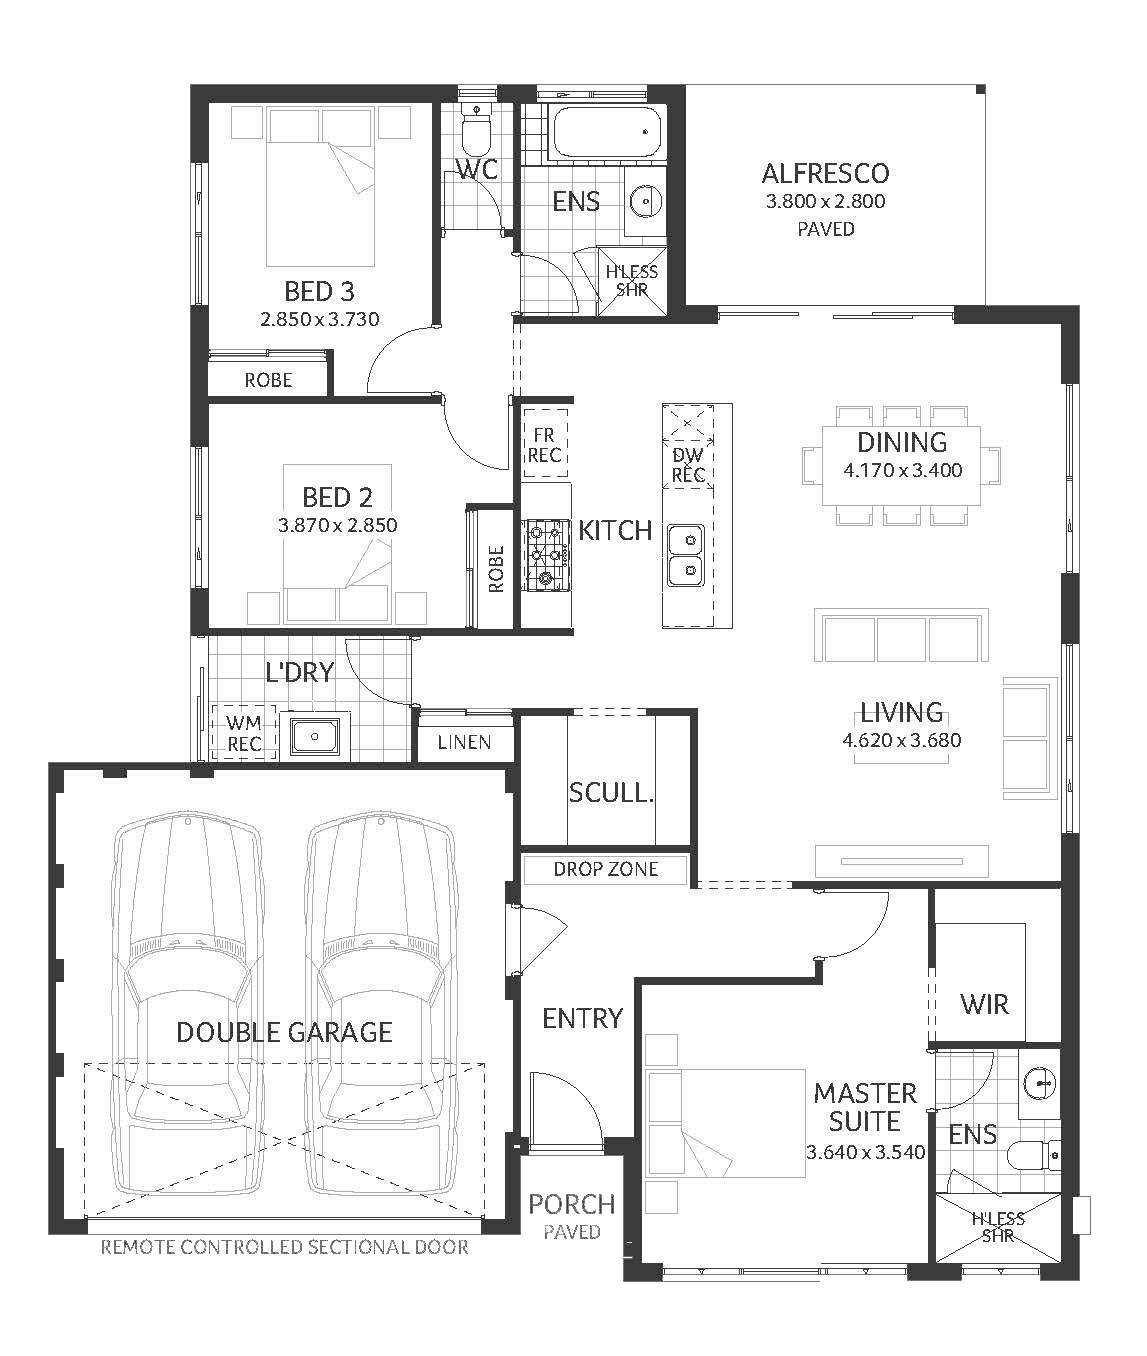 Plunkett Homes - Sandalwood | Lifestyle - Floorplan - Sandalwood Lifestyle Marketing Plan A3Jpg